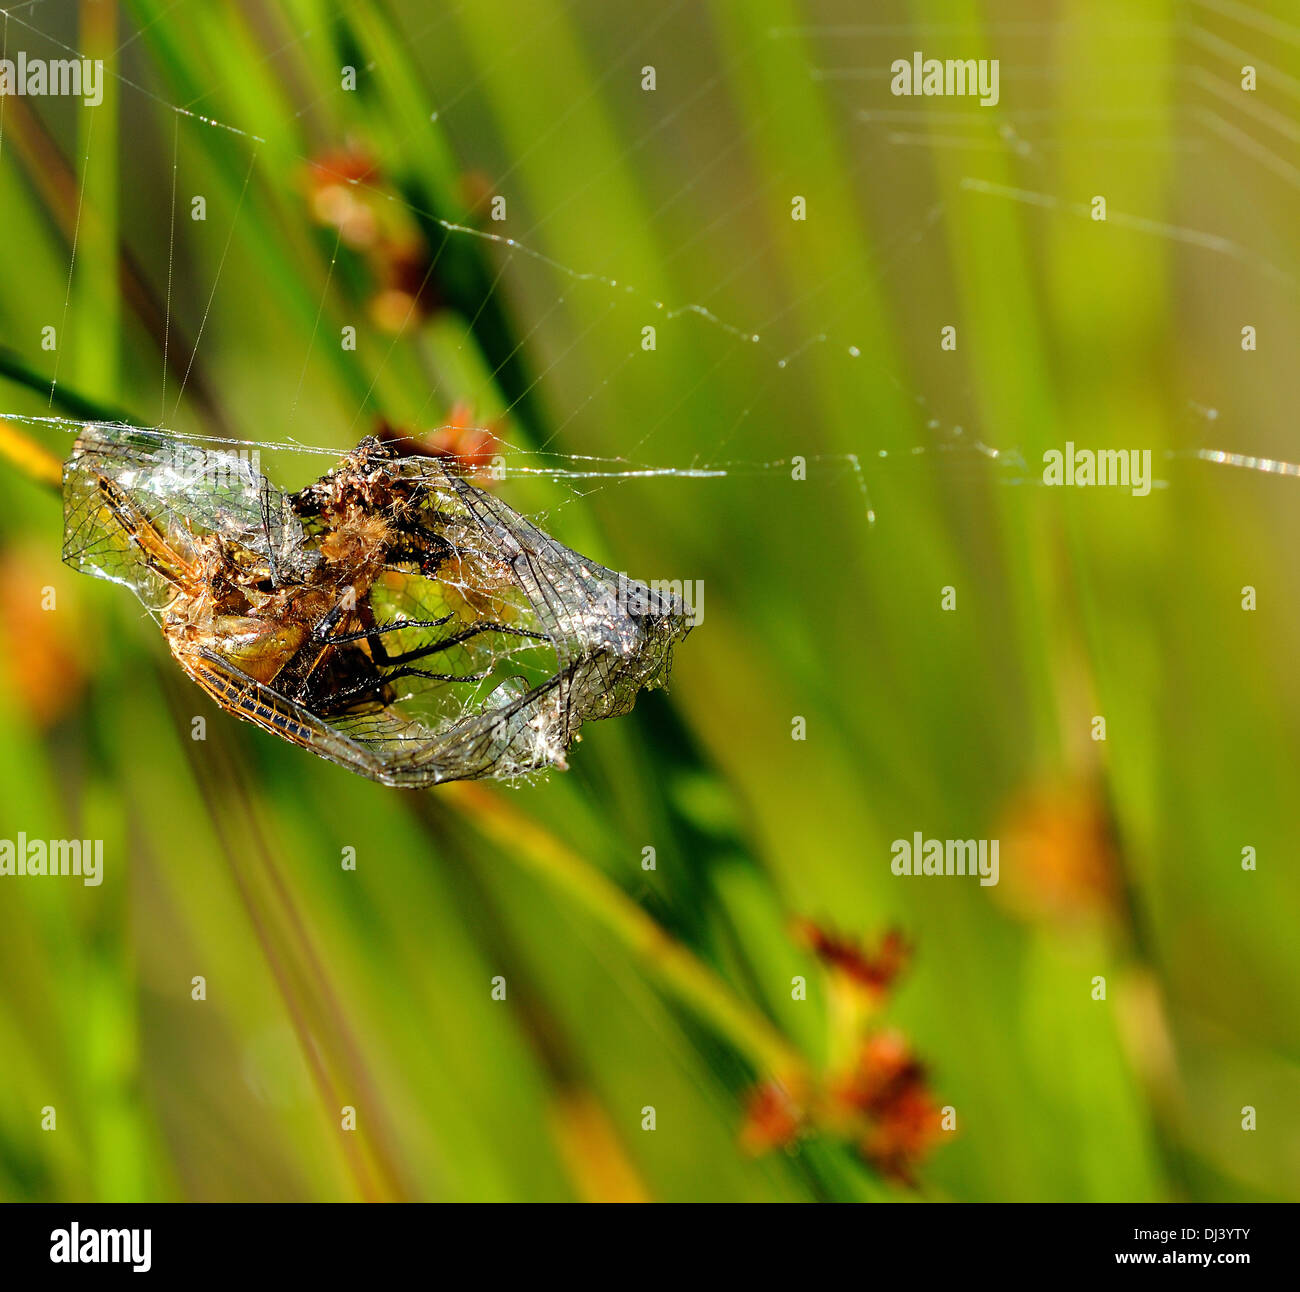 Calza avvolta in una tela di ragno Foto Stock